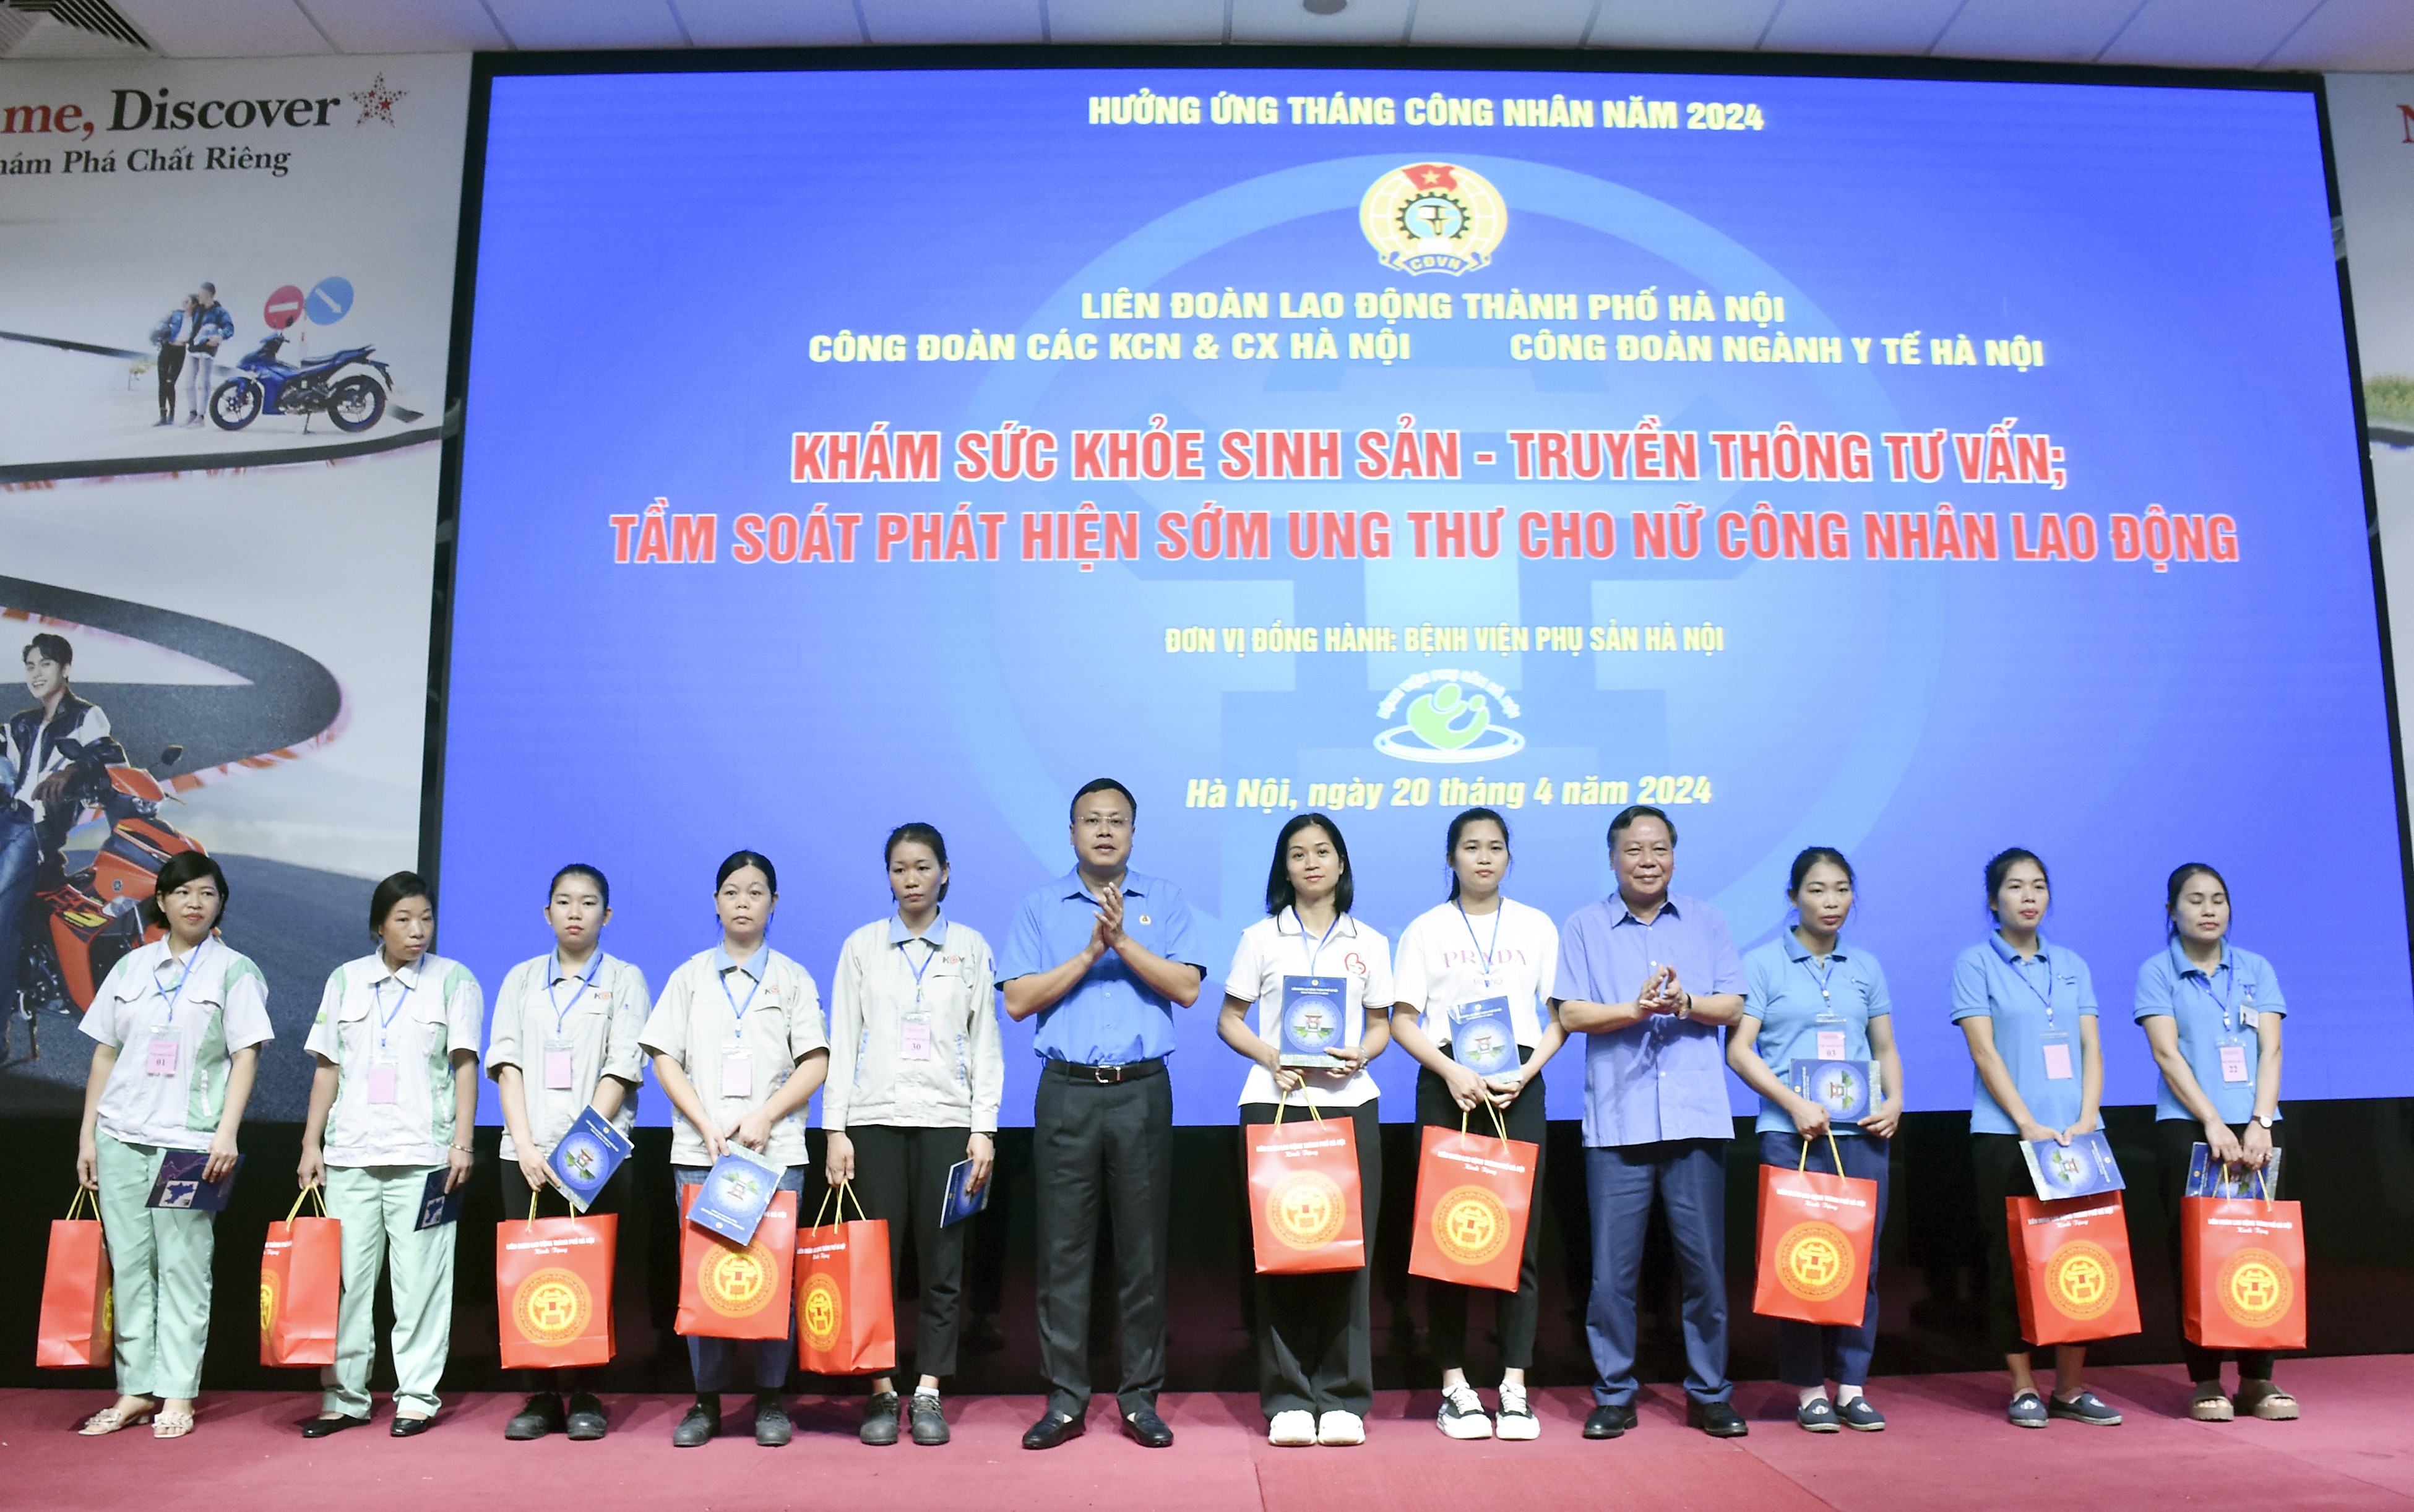 Sáng nay (20/4), 600 công nhân Khu Công nghiệp và chế xuất Hà Nội được tư vấn, khám sức khỏe miễn phí